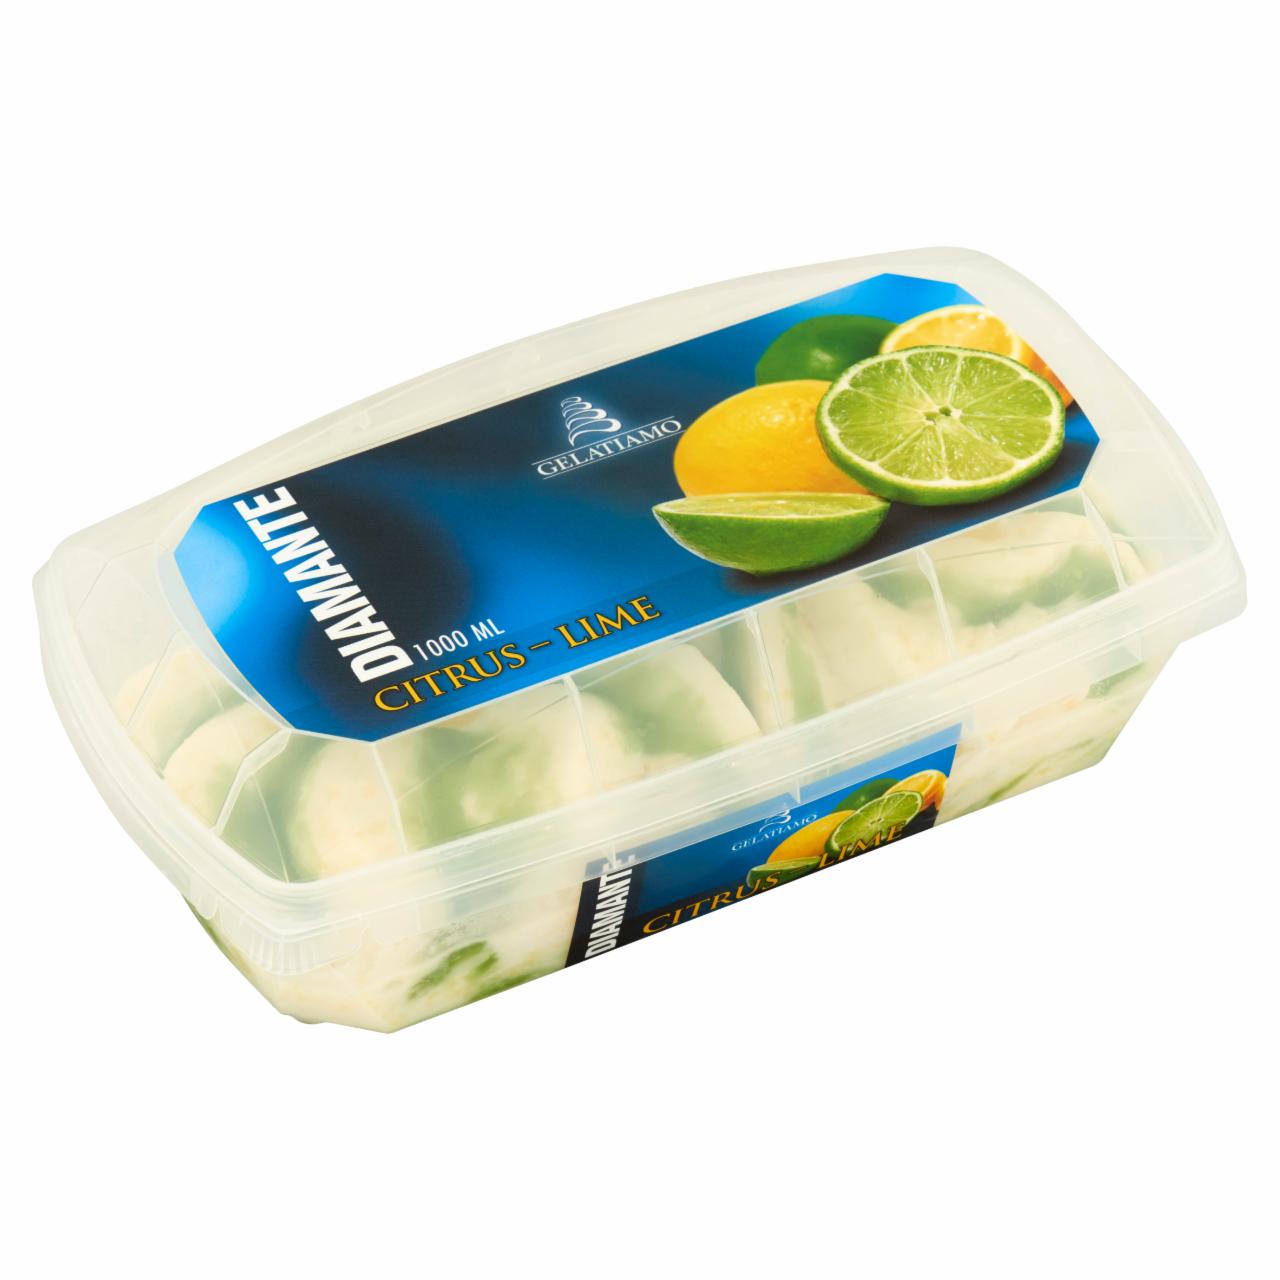 Képek - Gelatiamo Diamante Citrus-Lime citrom ízű jégkrém zöld citrom öntettel 1000 ml